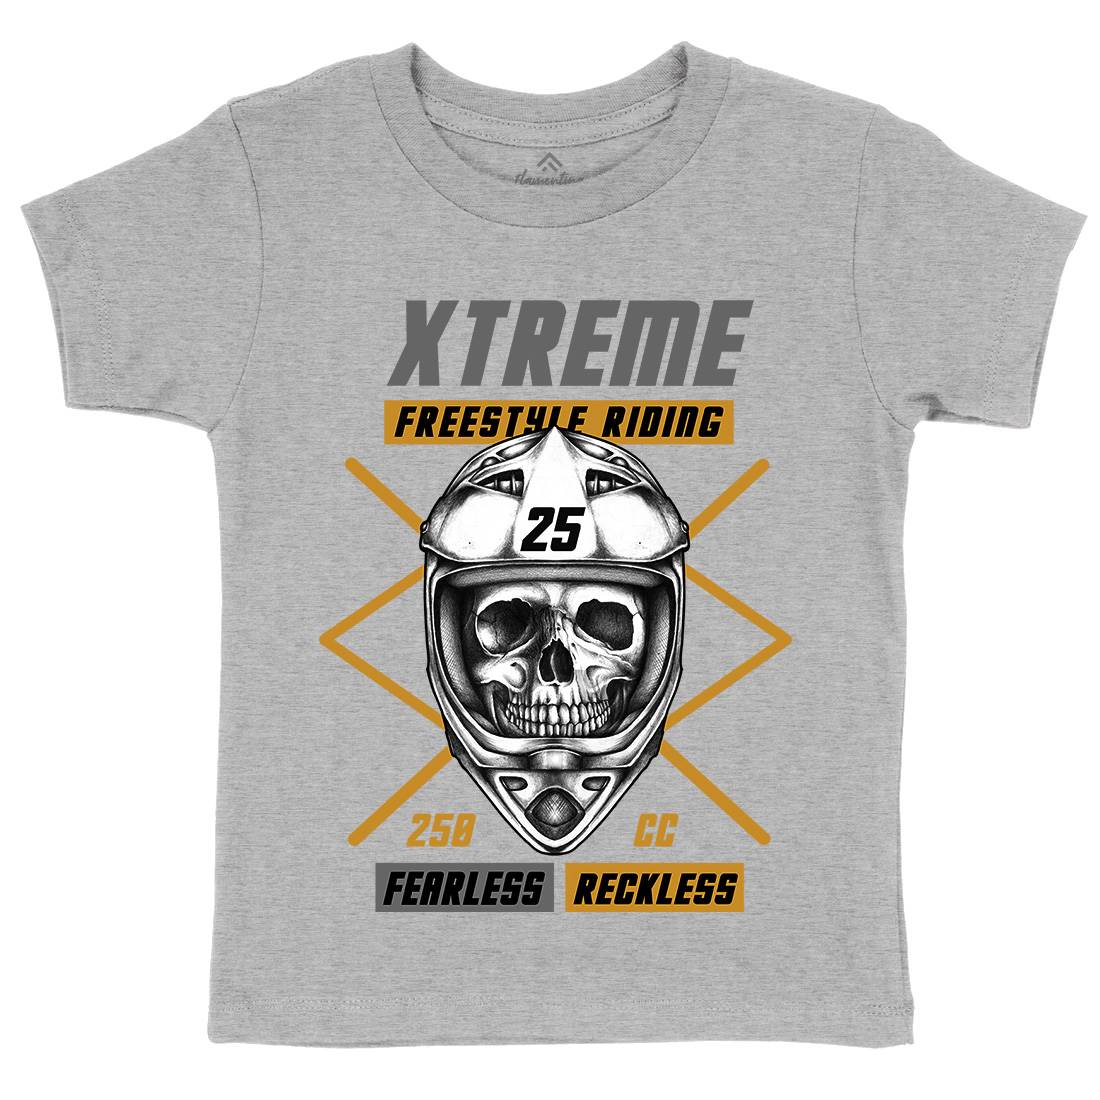 Fearless Kids Crew Neck T-Shirt Cars A422